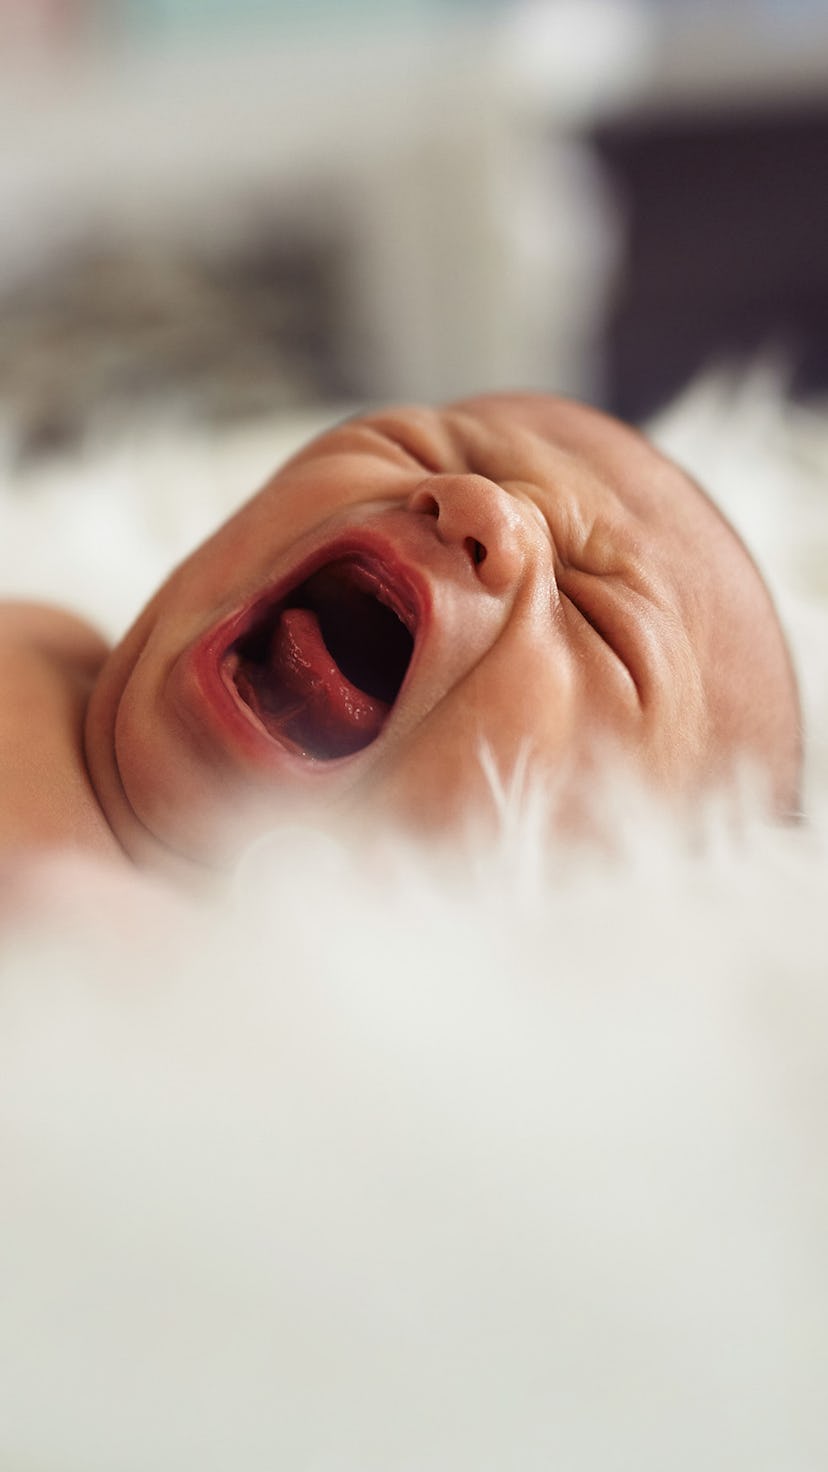 Newborn baby crying despite sleep training